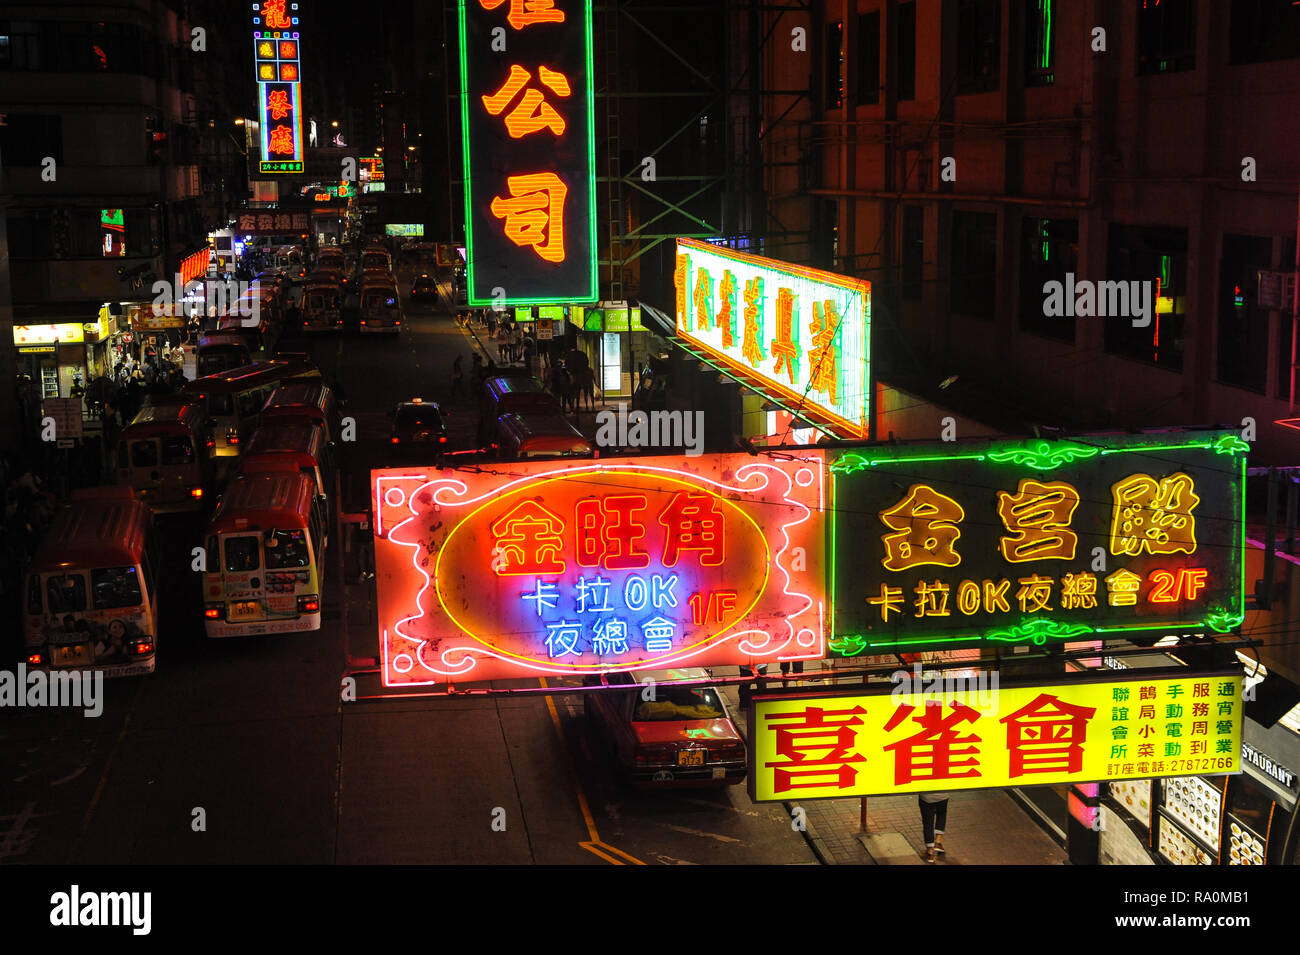 11.10.2014, Hongkong, Volksrepublik China, Asien - Bunte Neonschilder beleuchten eine Strasse in Kowloons Arbeiterviertel Mong Kok. 0SL141011D004CARO. Stock Photo